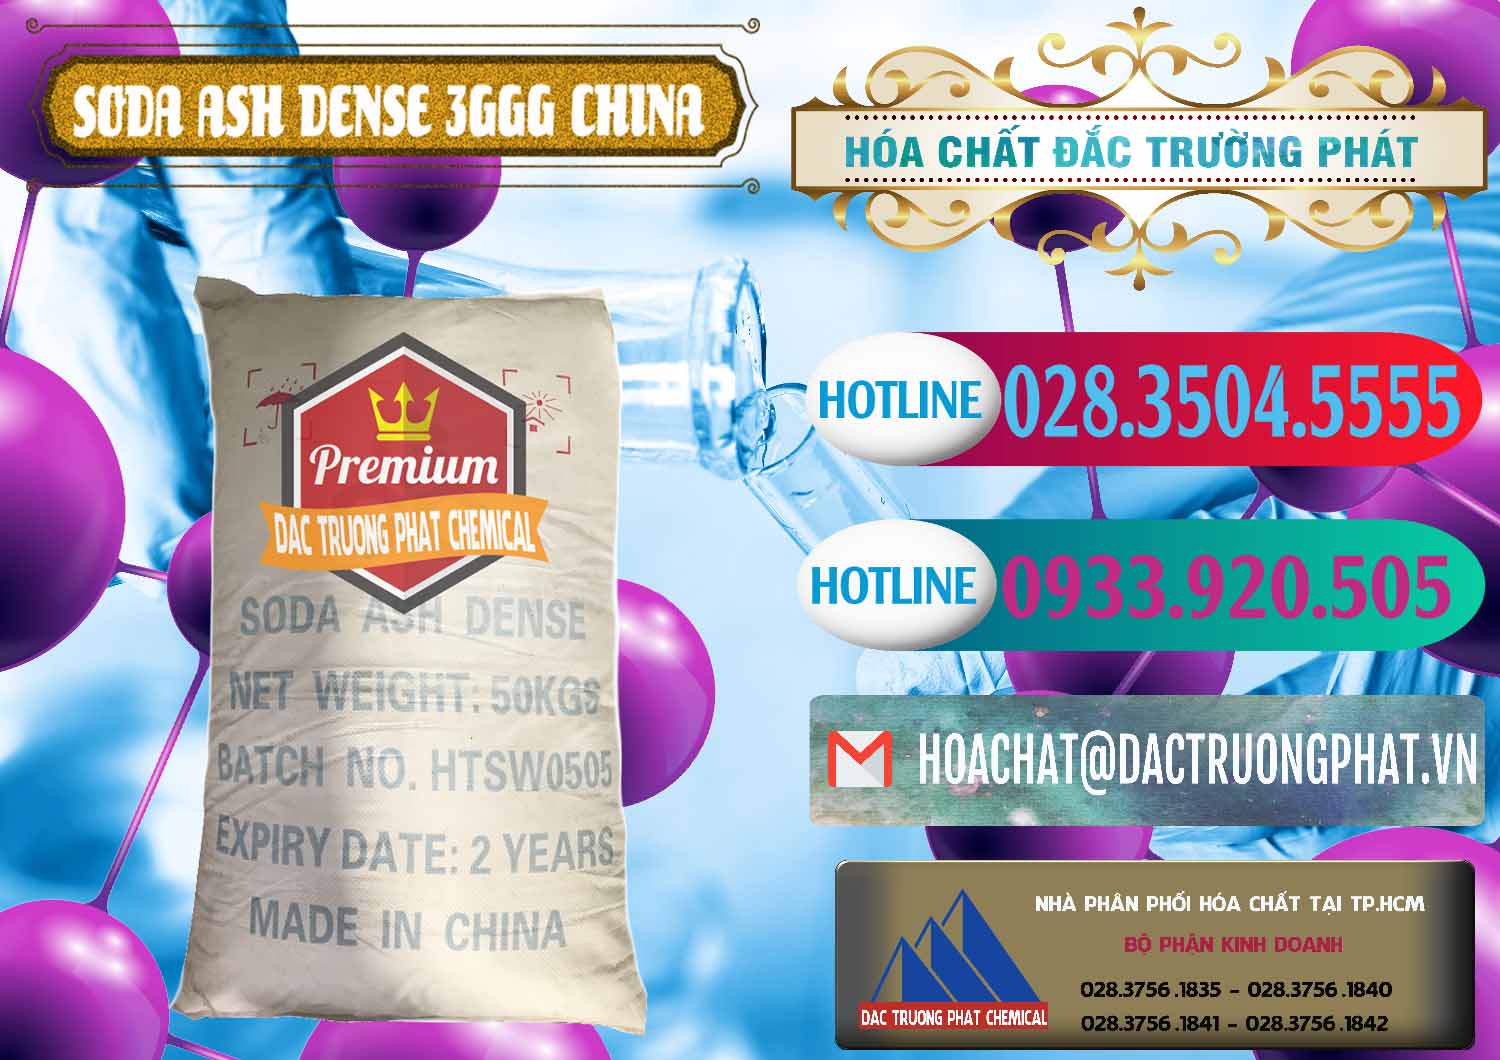 Đơn vị chuyên bán - phân phối Soda Ash Dense - NA2CO3 3GGG Trung Quốc China - 0335 - Đơn vị cung cấp - phân phối hóa chất tại TP.HCM - truongphat.vn